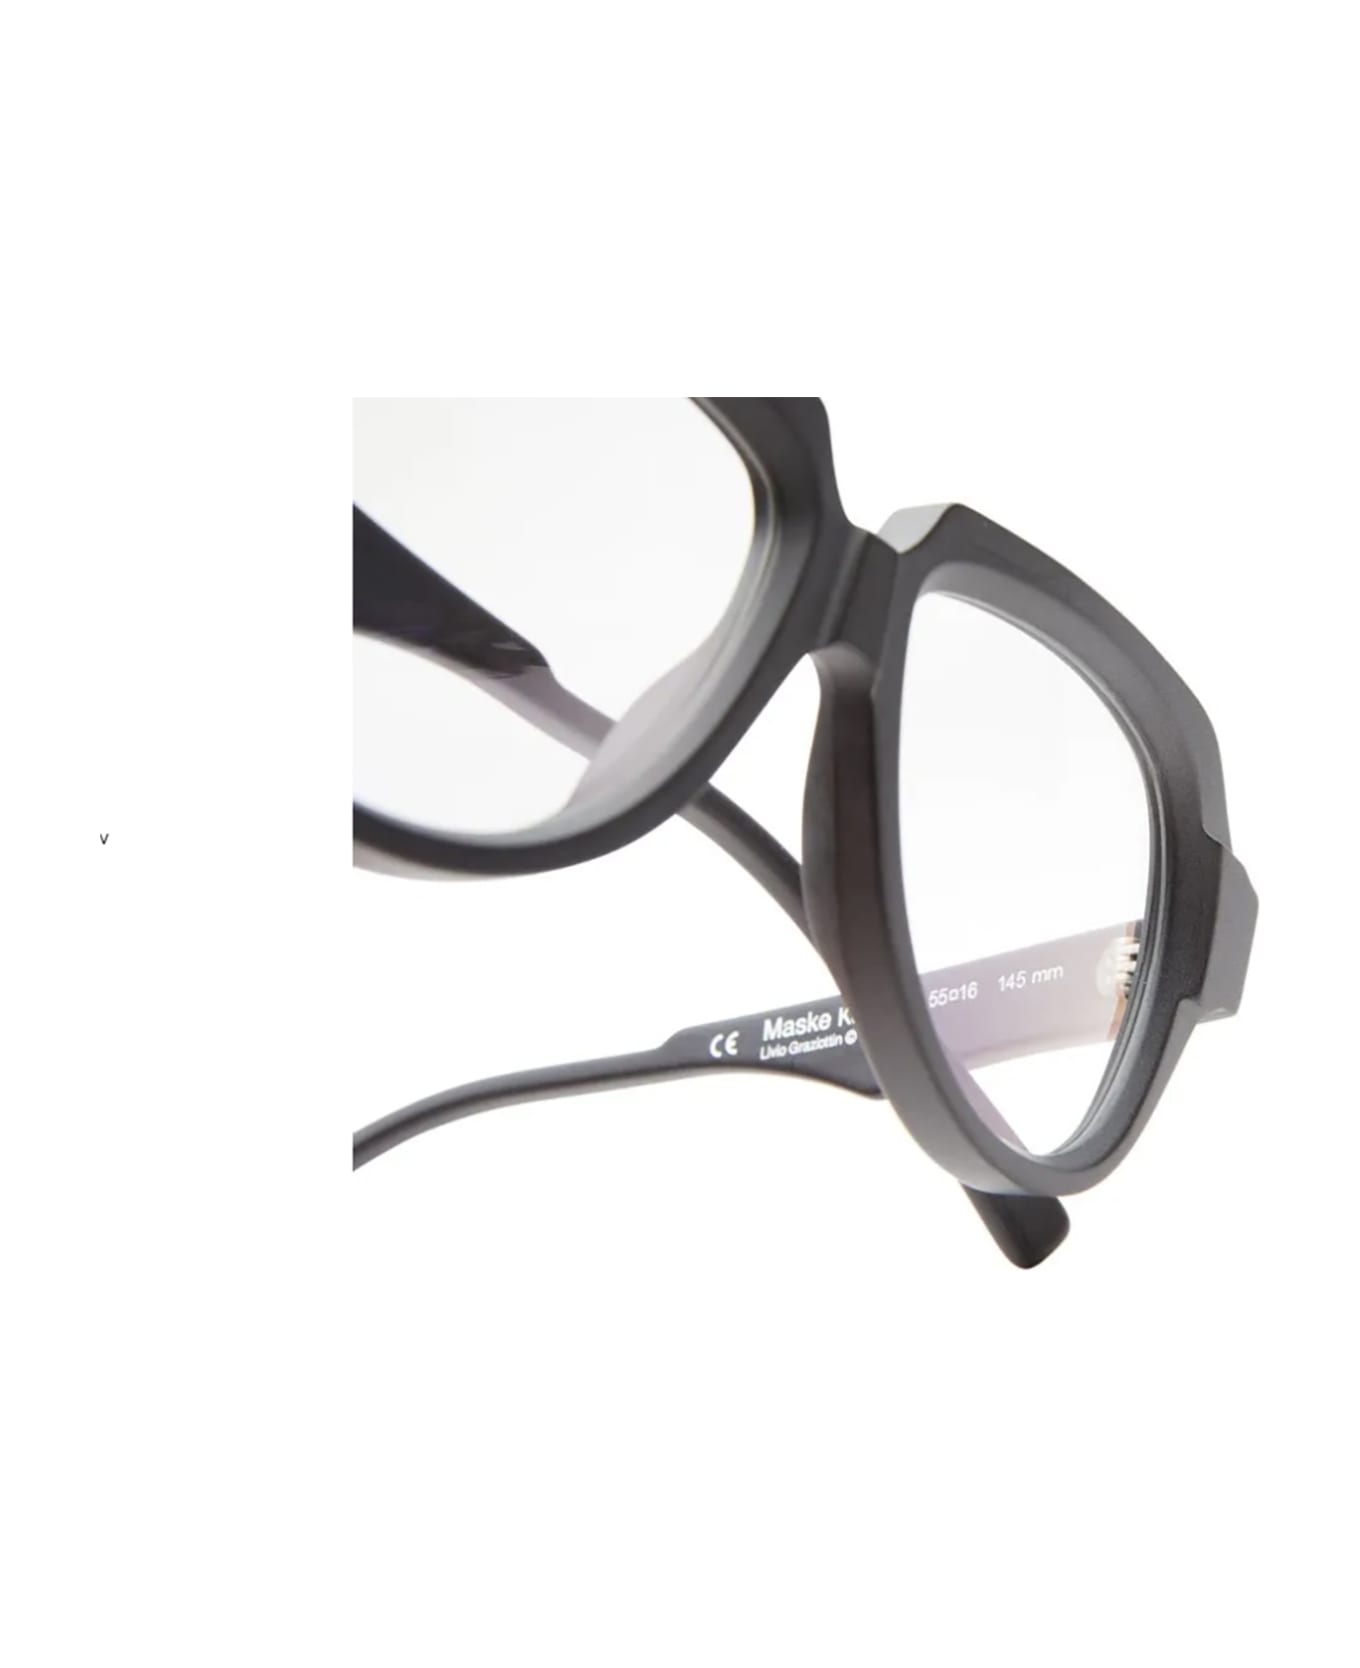 Kuboraum K37 Eyewear - Bm